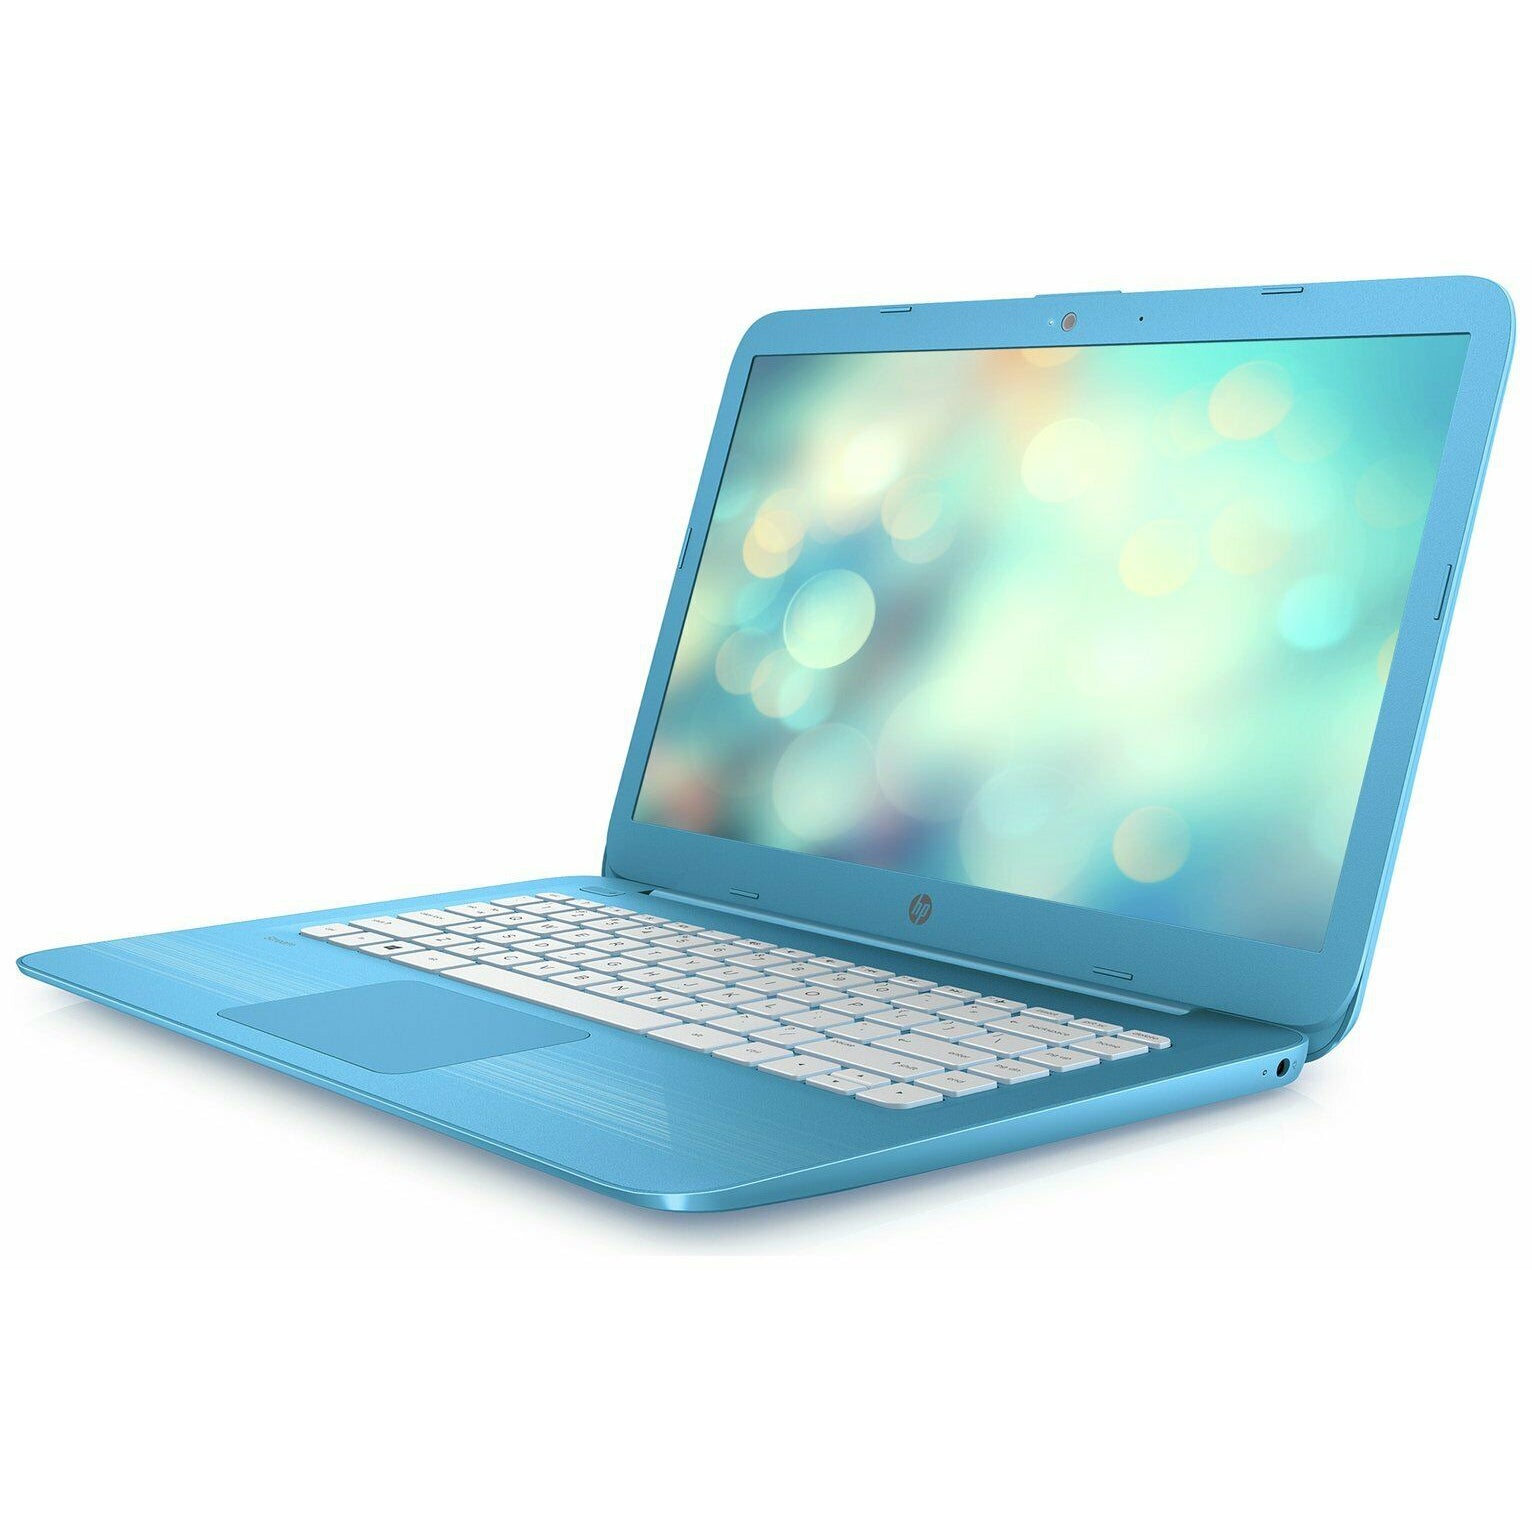 HP Stream 14-ax000na 14” (32GB eMMC, Intel Celeron N3060, 1.6 GHz, 4GB) Laptop - Aqua Blue - X9W65EA#ABU